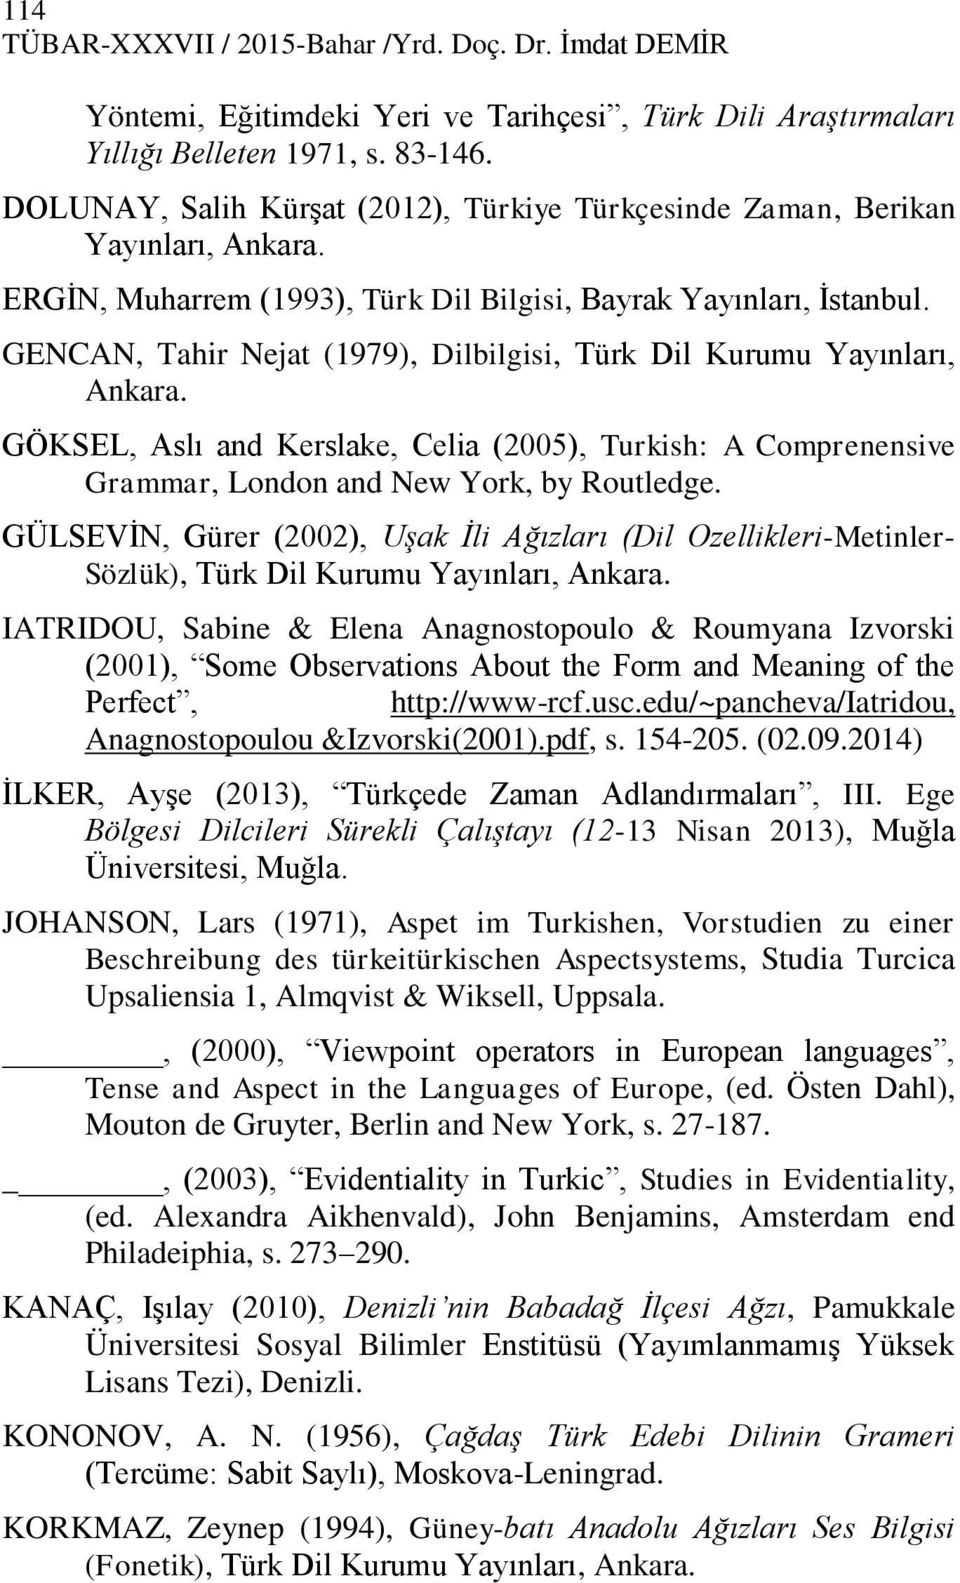 GENCAN, Tahir Nejat (1979), Dilbilgisi, Türk Dil Kurumu Yayınları, Ankara. GÖKSEL, Aslı and Kerslake, Celia (2005), Turkish: A Comprenensive Grammar, London and New York, by Routledge.